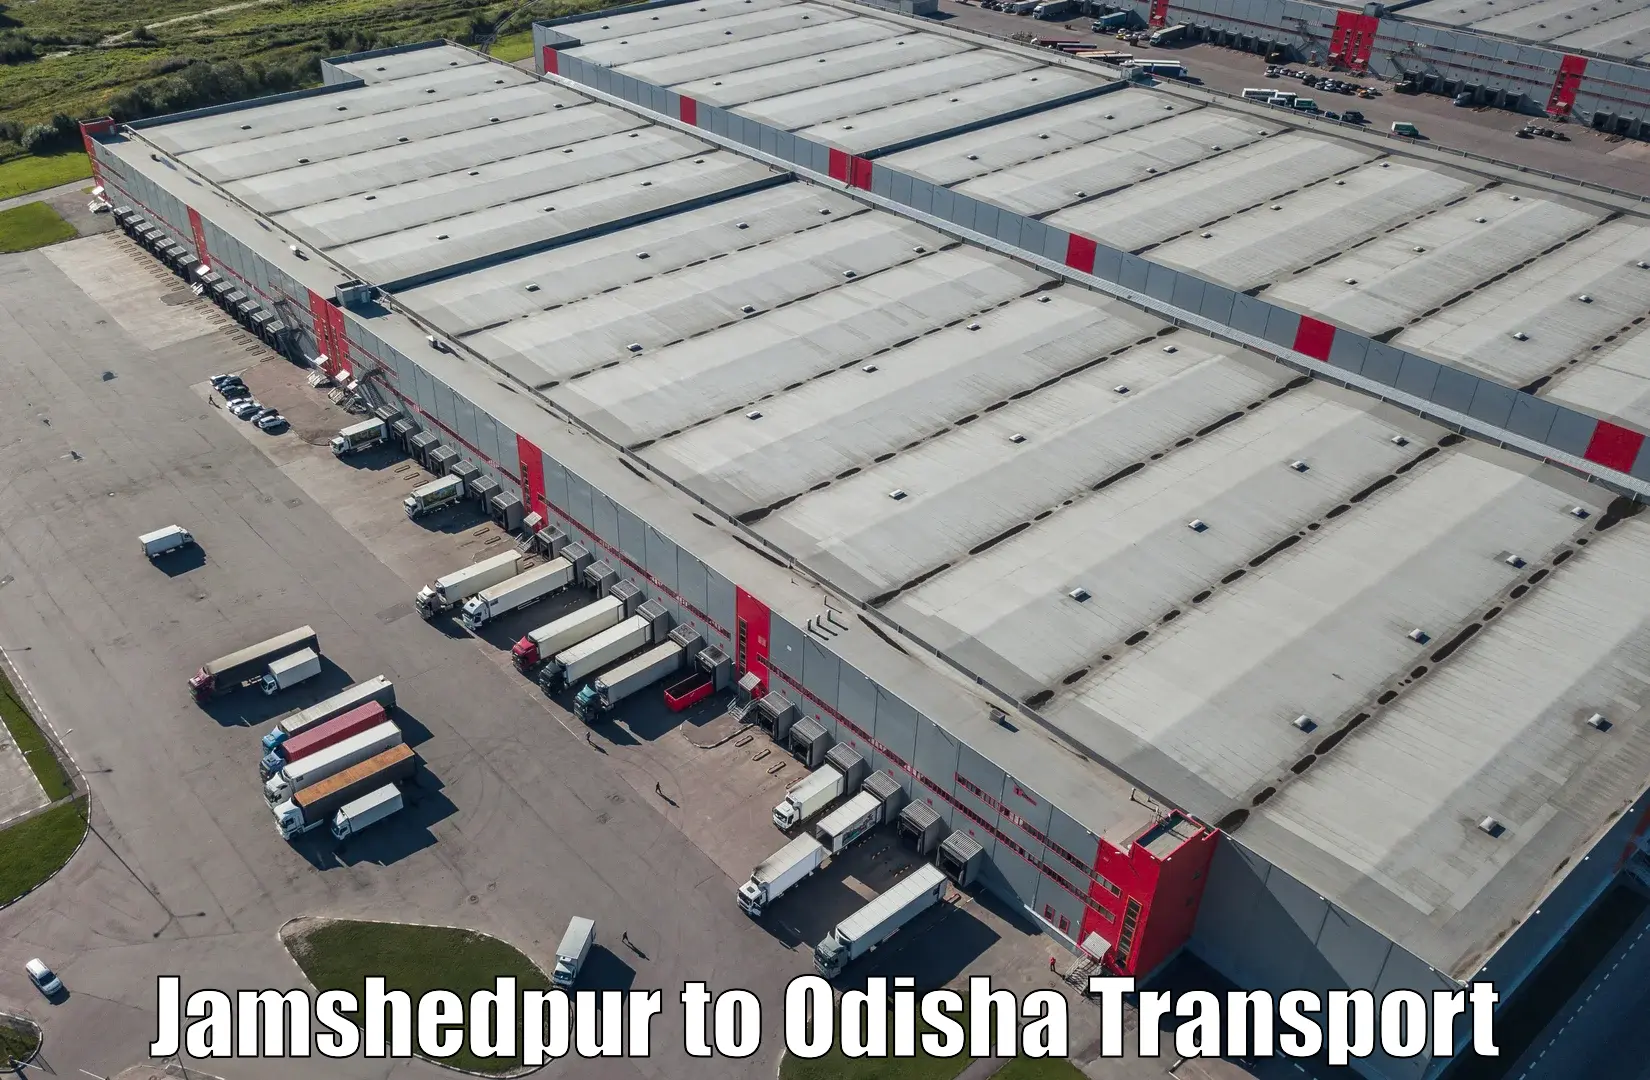 Furniture transport service Jamshedpur to Garjanpur